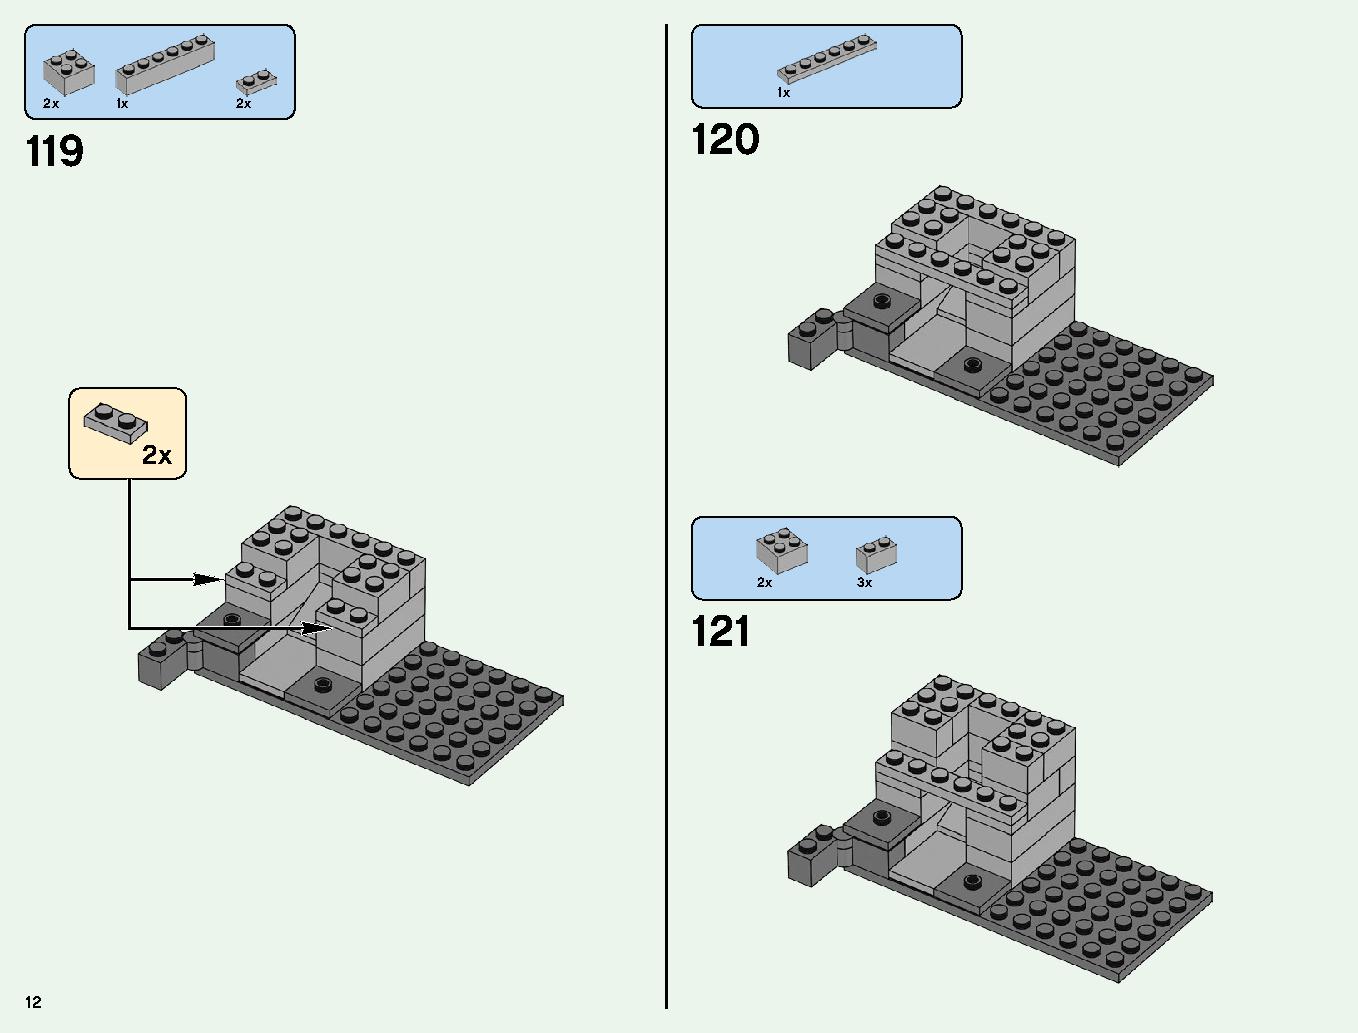 ベッドロックの冒険 21147 レゴの商品情報 レゴの説明書・組立方法 12 page